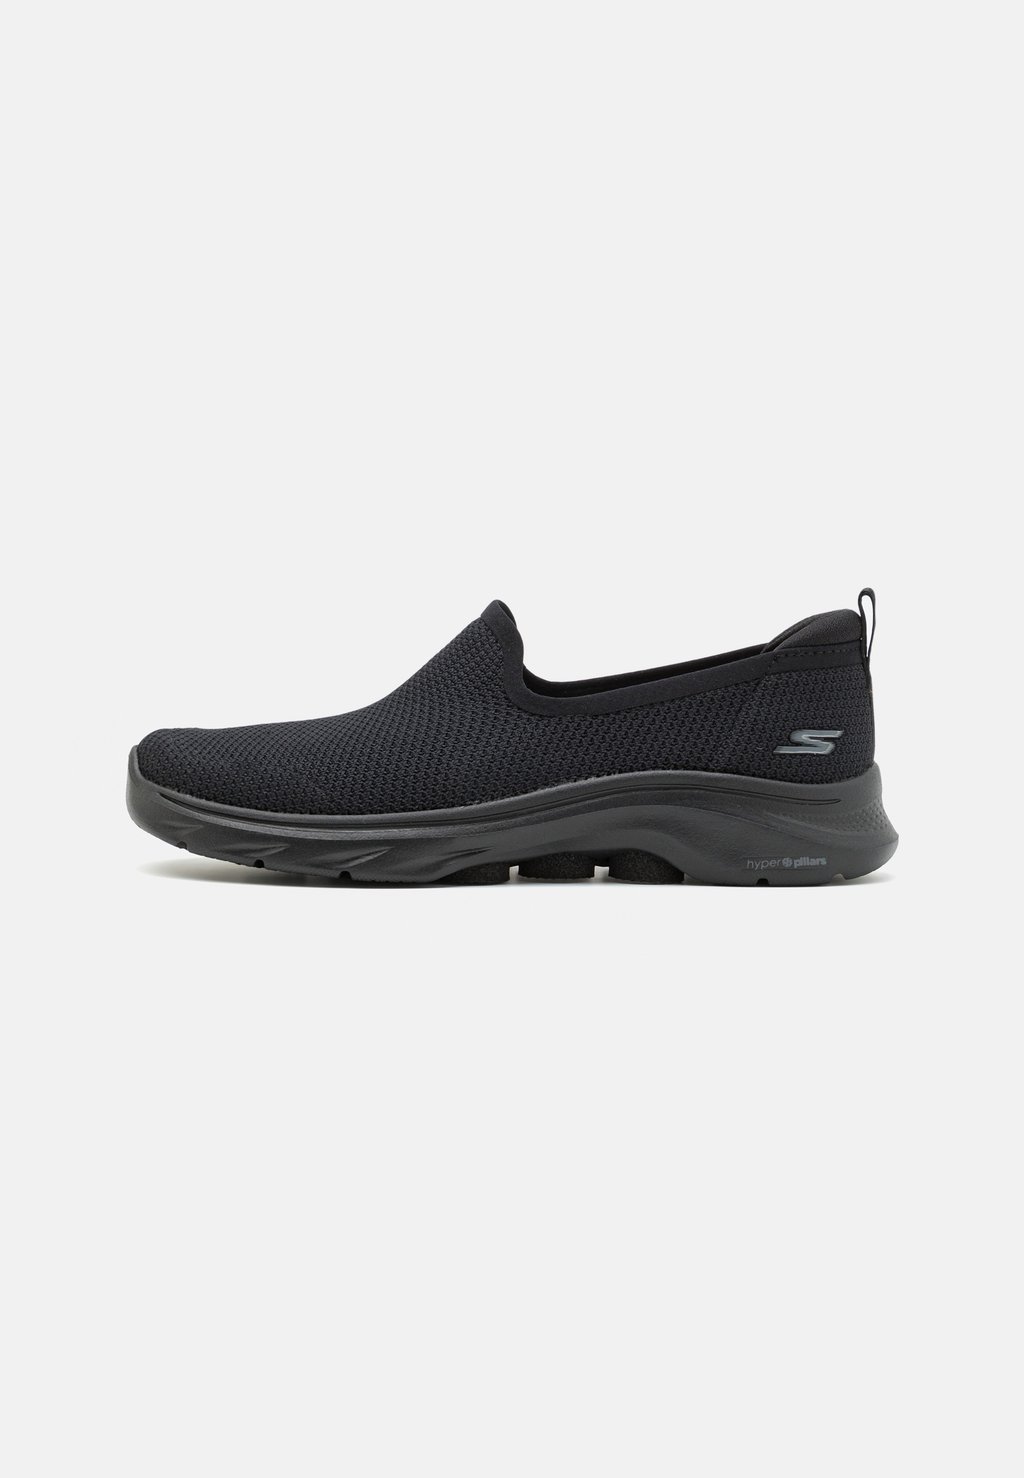 Обувь для ходьбы GO WALK 7 SLIP ON Skechers Performance, цвет black обувь для ходьбы go walk slip in skechers performance цвет black